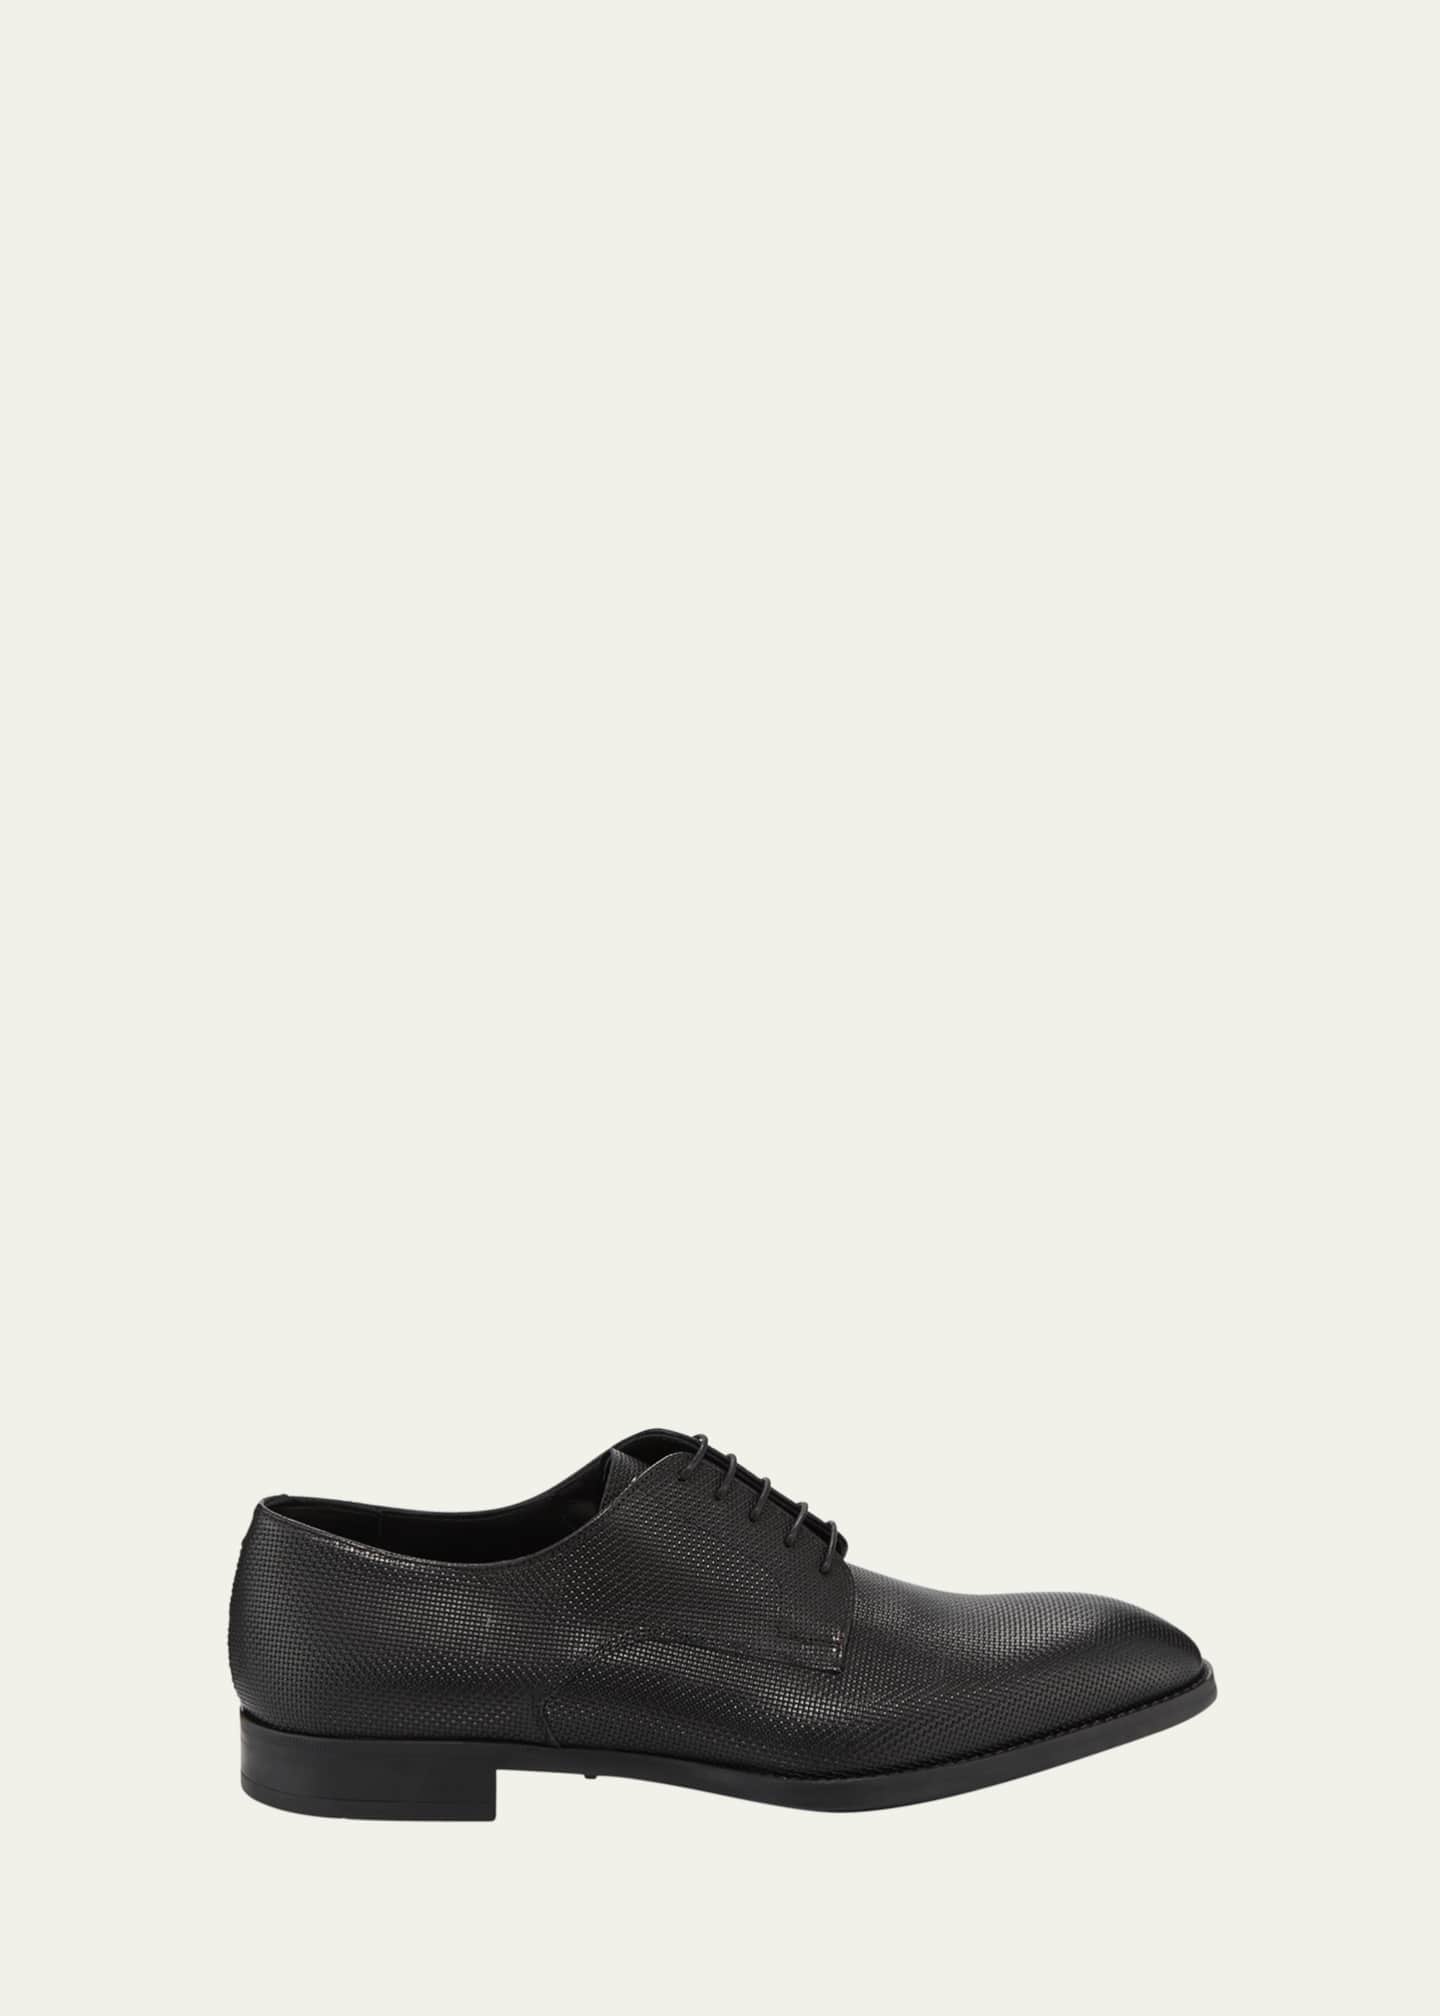 Leuren boekje Hen Giorgio Armani Men's Textured Leather Derby Shoes - Bergdorf Goodman